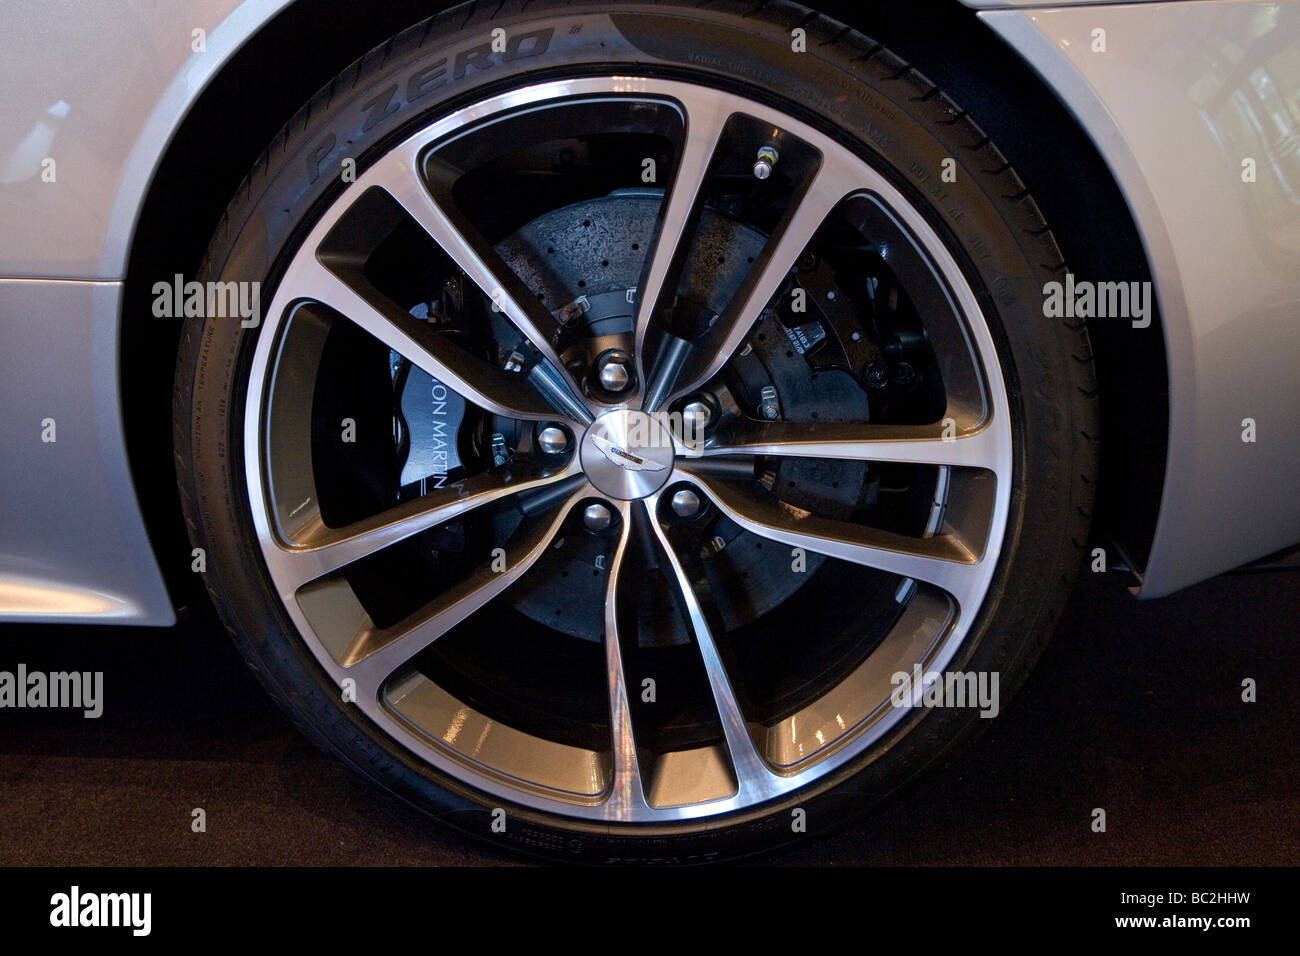 Aston Martin Alloy Wheel at Motorexpo London Stock Photo